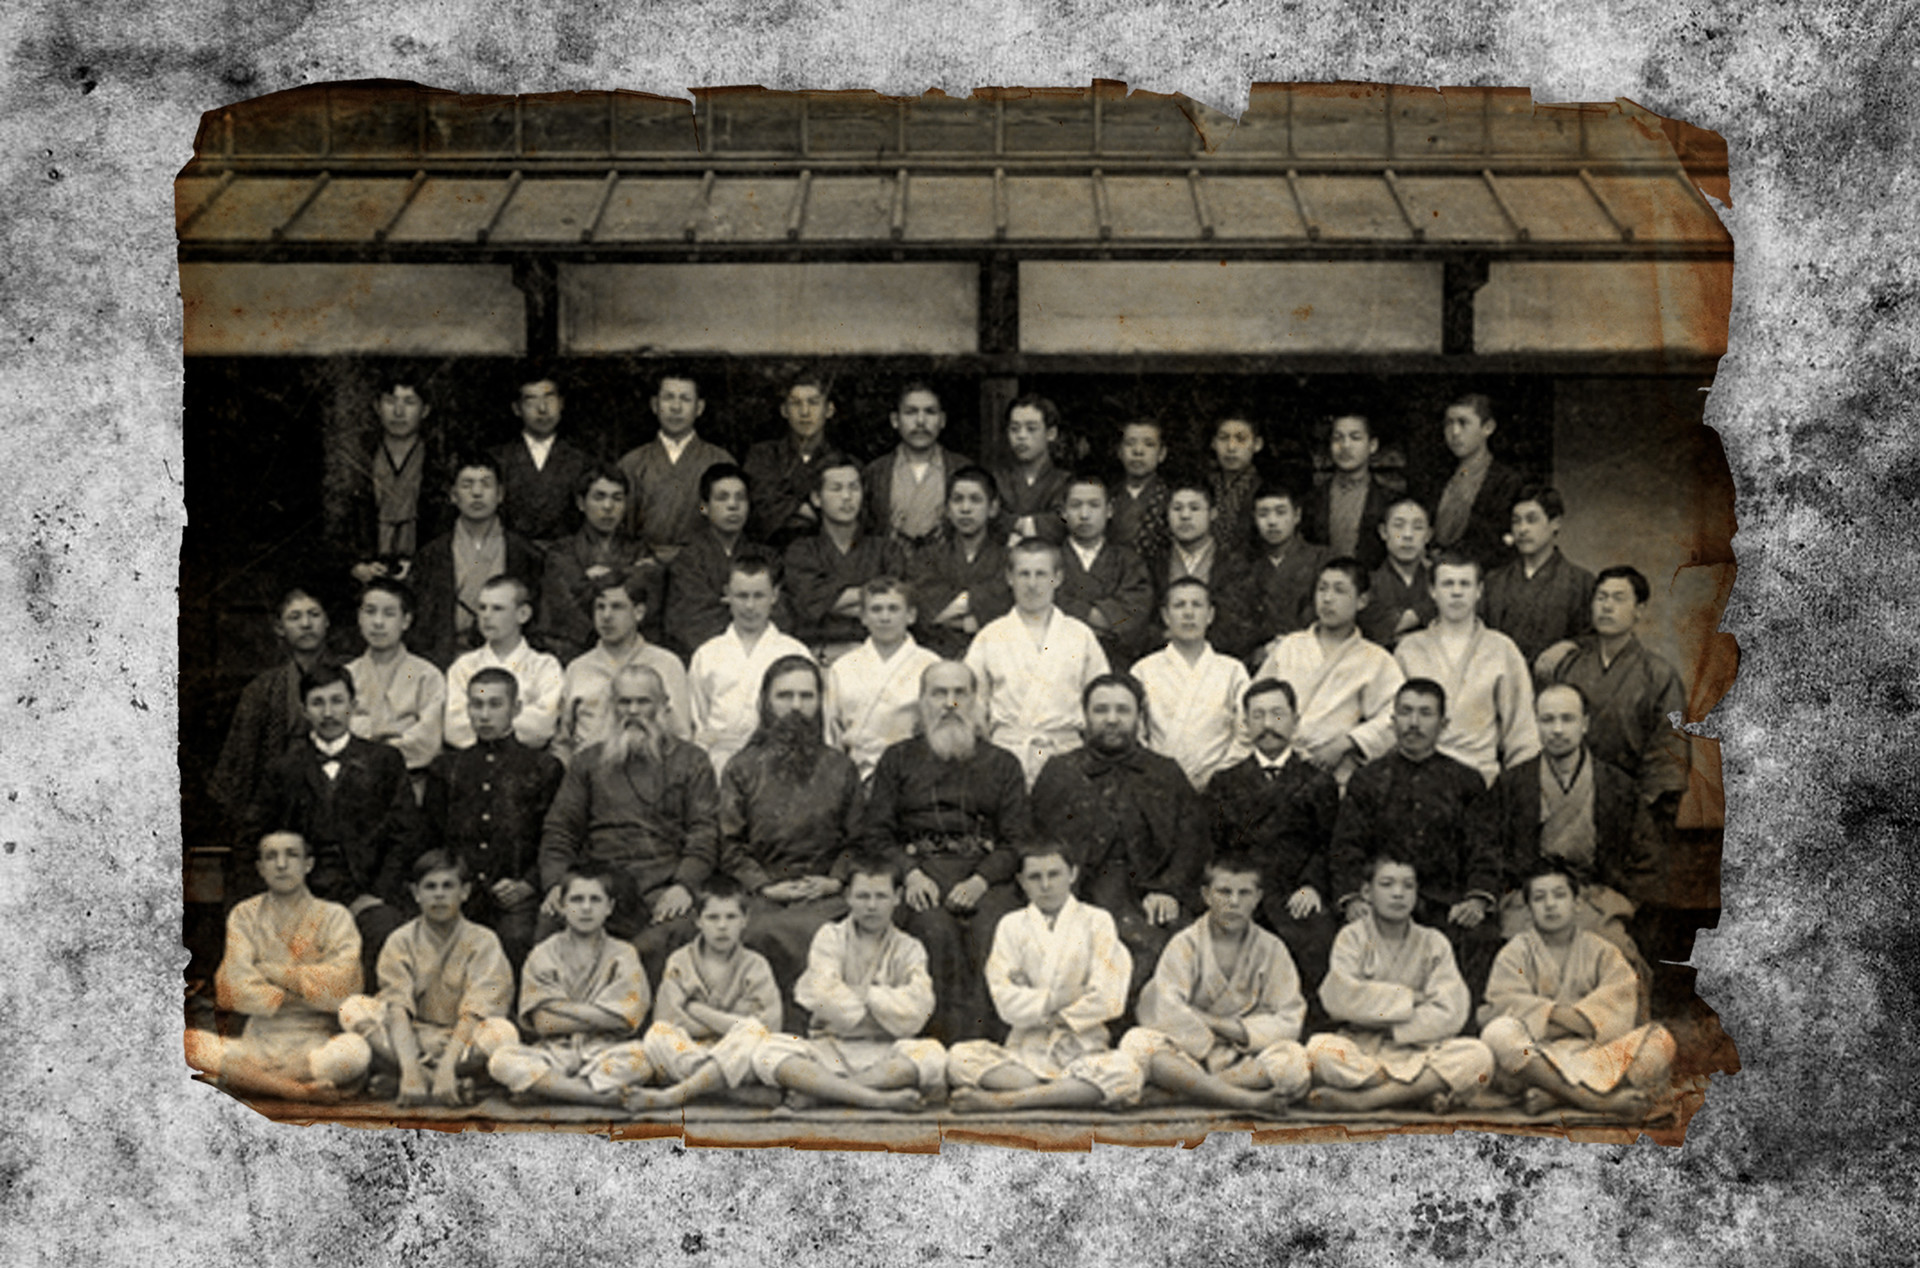 Učenci pravoslavne misije na Japonskem. Oščepkov je tretji v tretji vrsti z leve.

